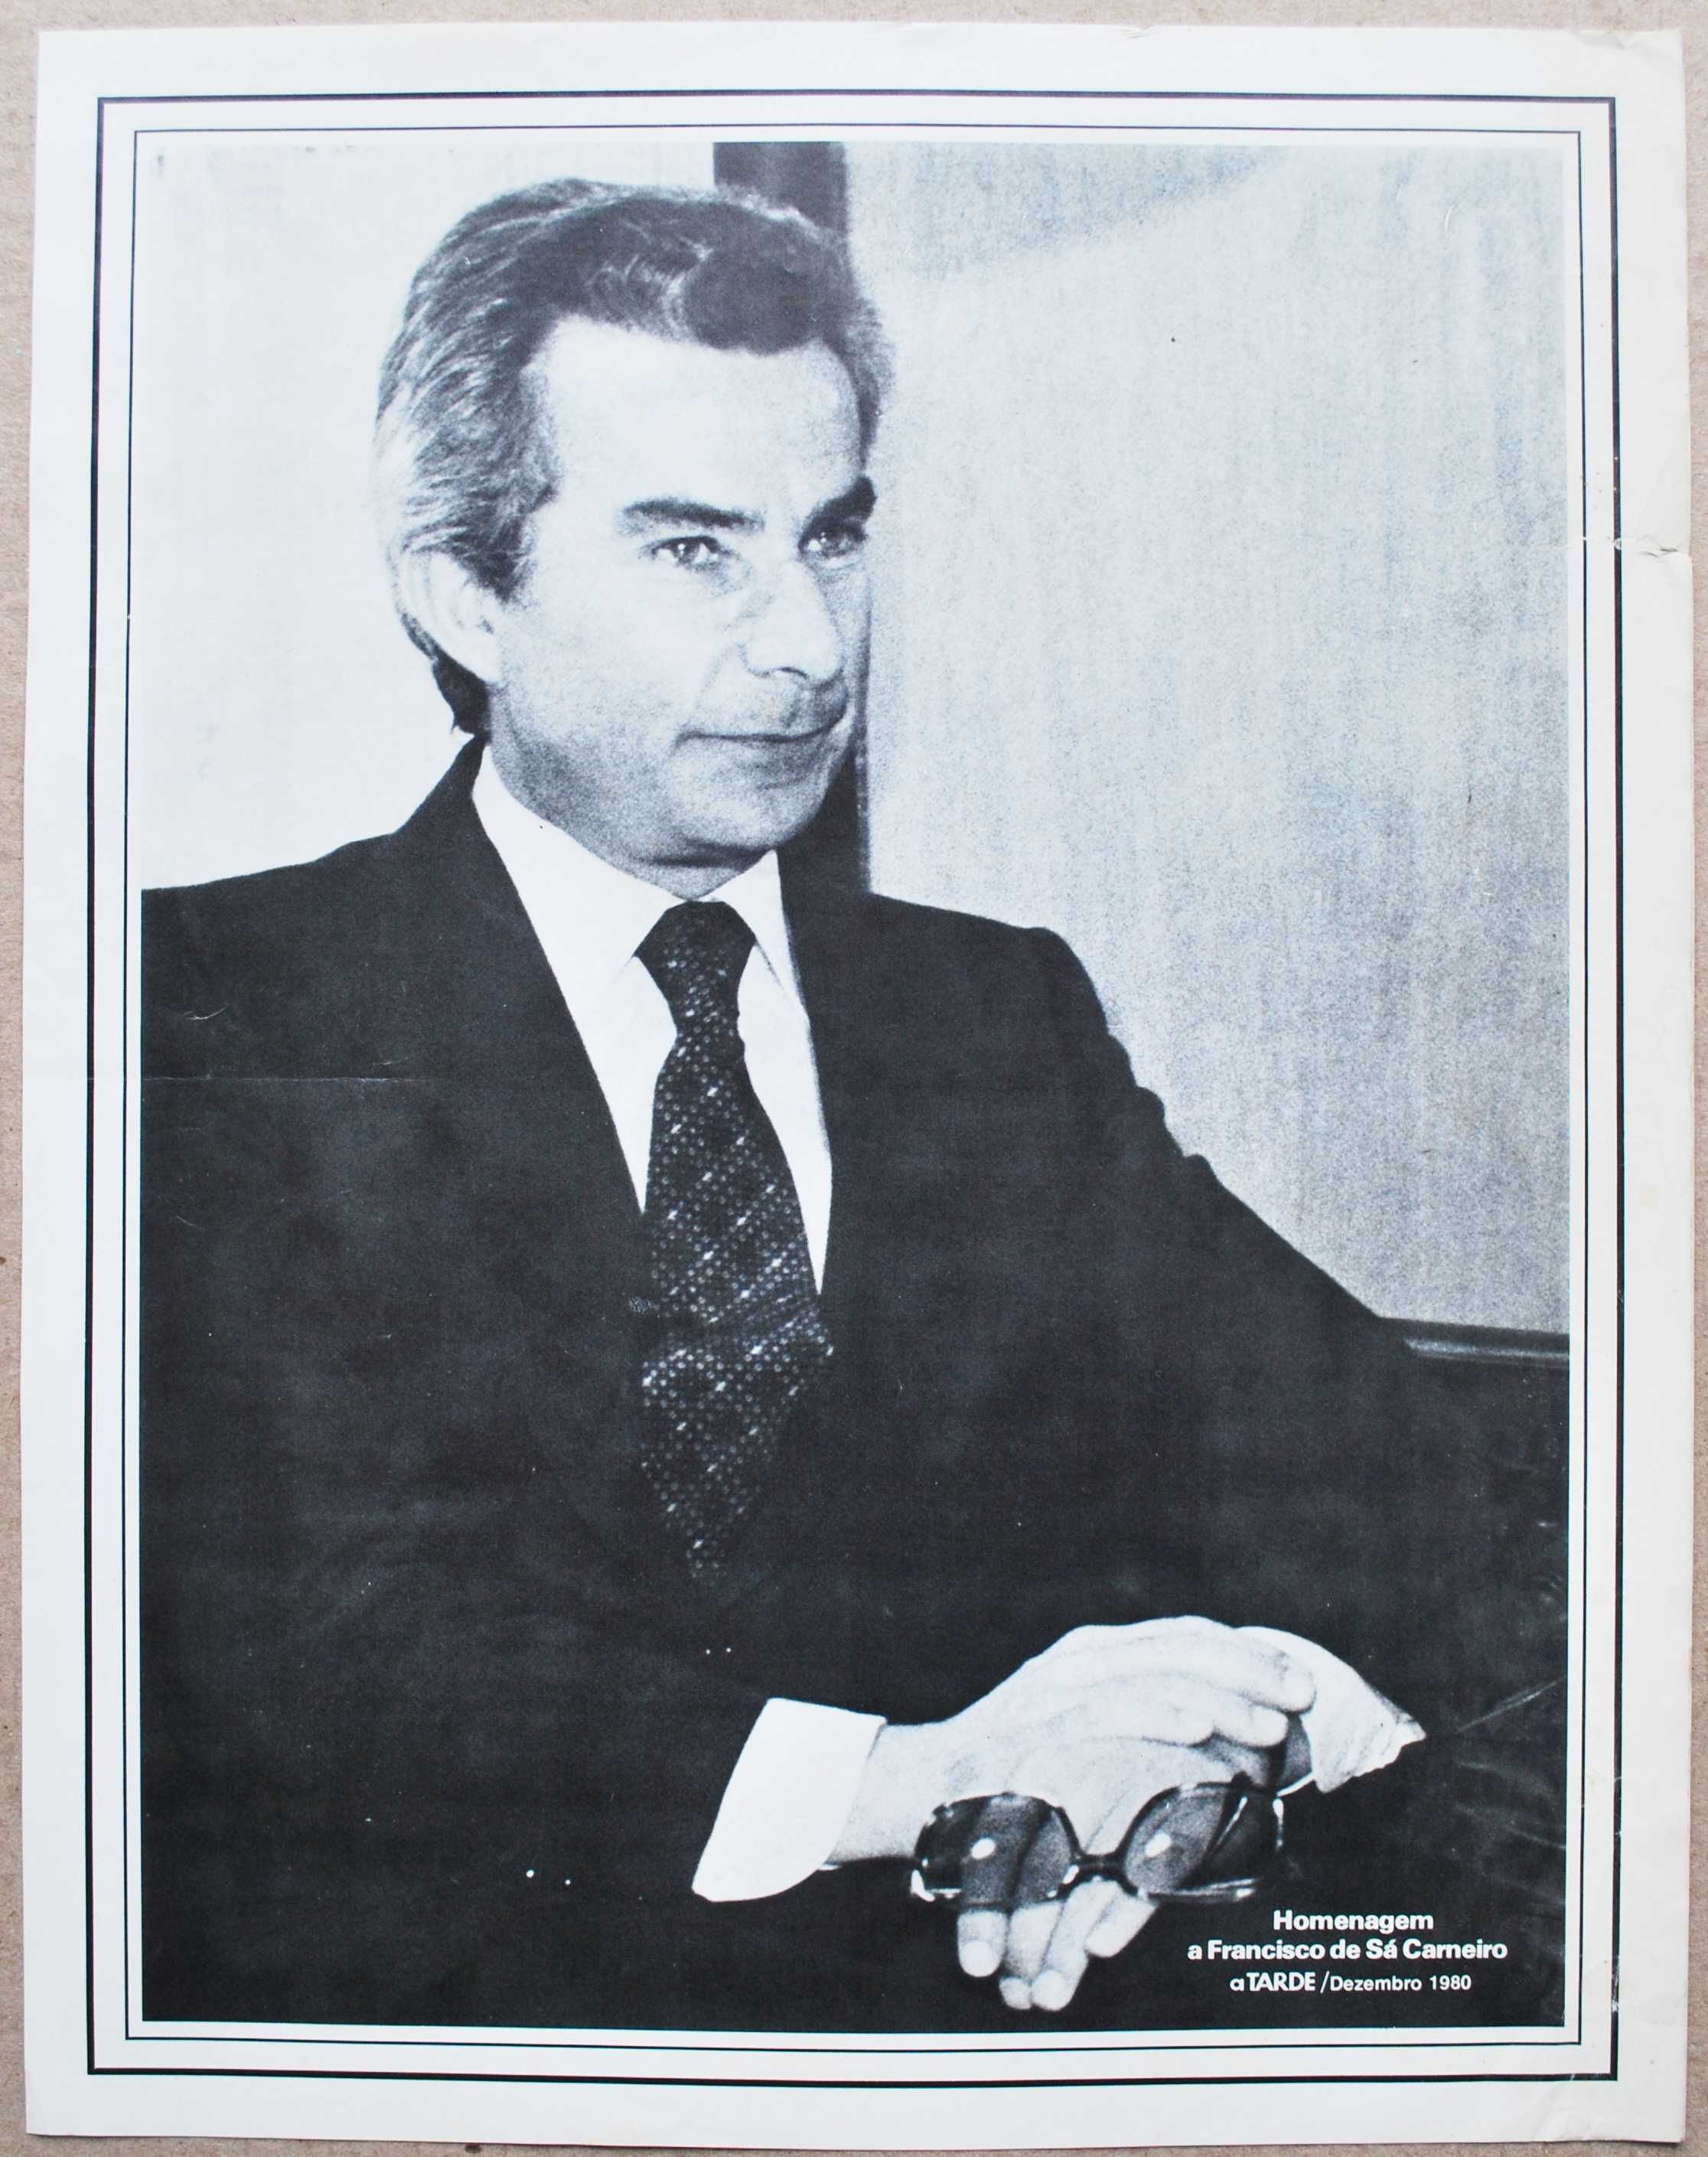 Fotografia de Sá Carneiro, oferta do jornal A Tarde, Dezembro de 1980